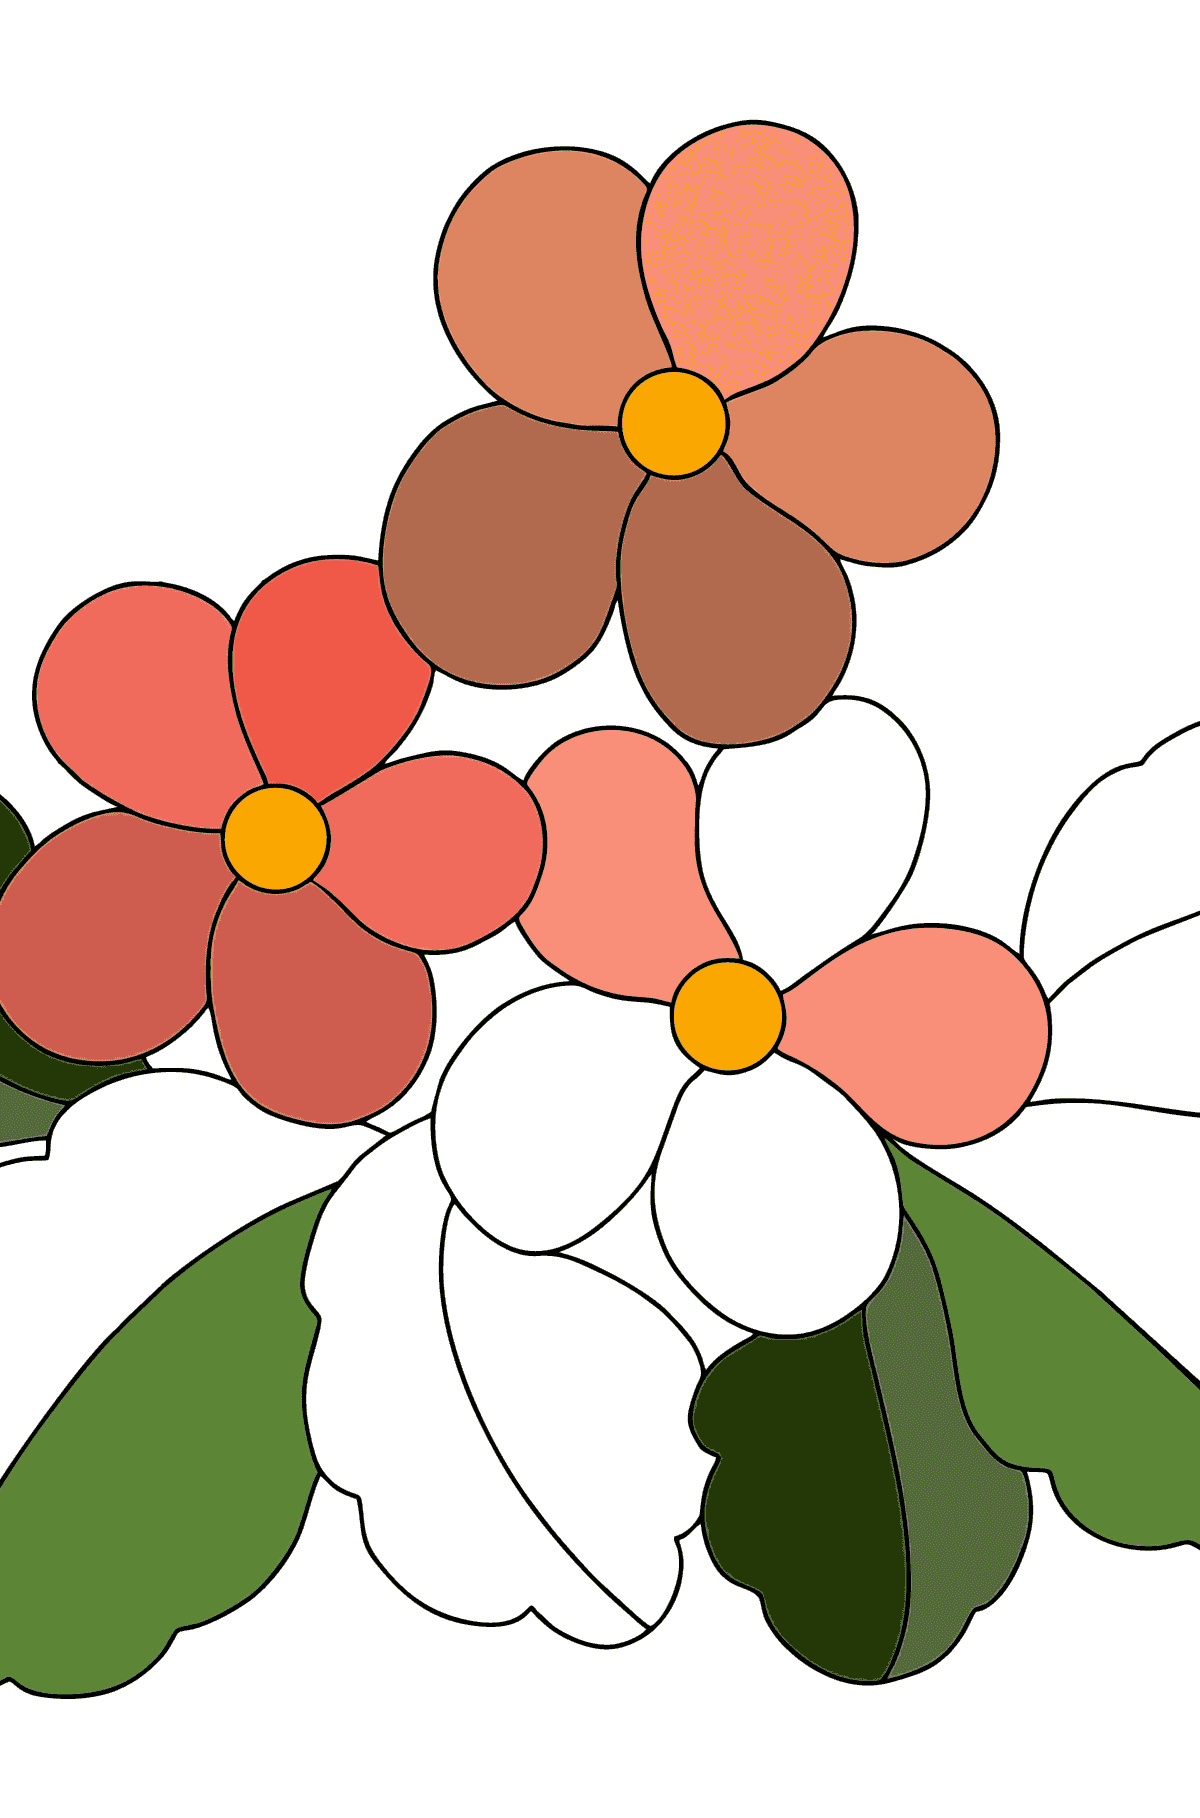 Kleurplaat eerste lente bloemen - kleurplaten voor kinderen